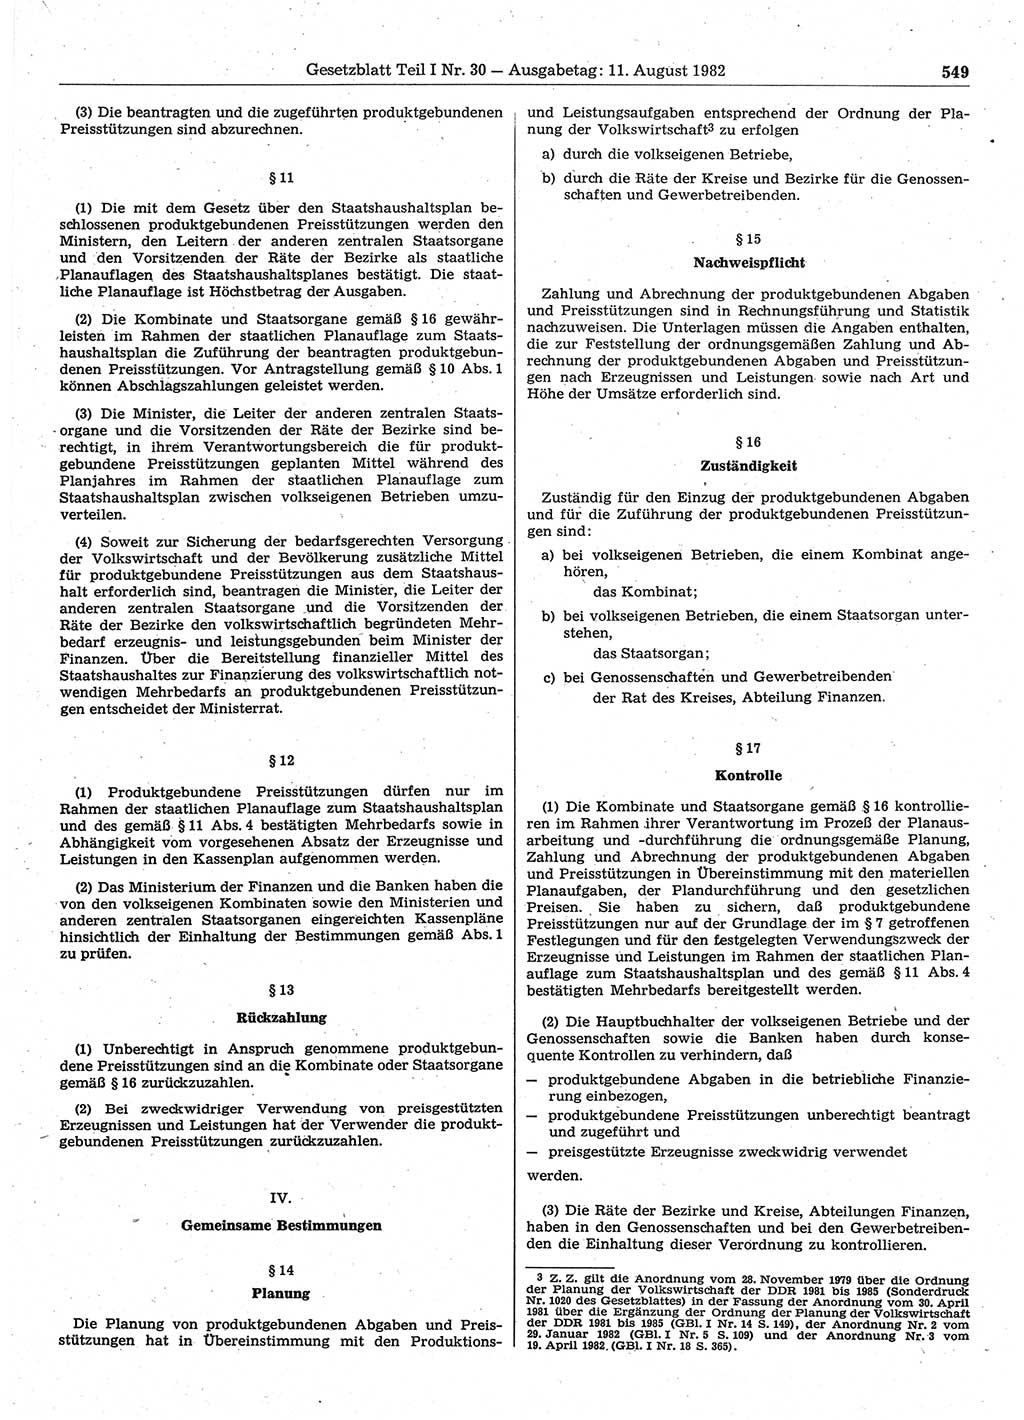 Gesetzblatt (GBl.) der Deutschen Demokratischen Republik (DDR) Teil Ⅰ 1982, Seite 549 (GBl. DDR Ⅰ 1982, S. 549)